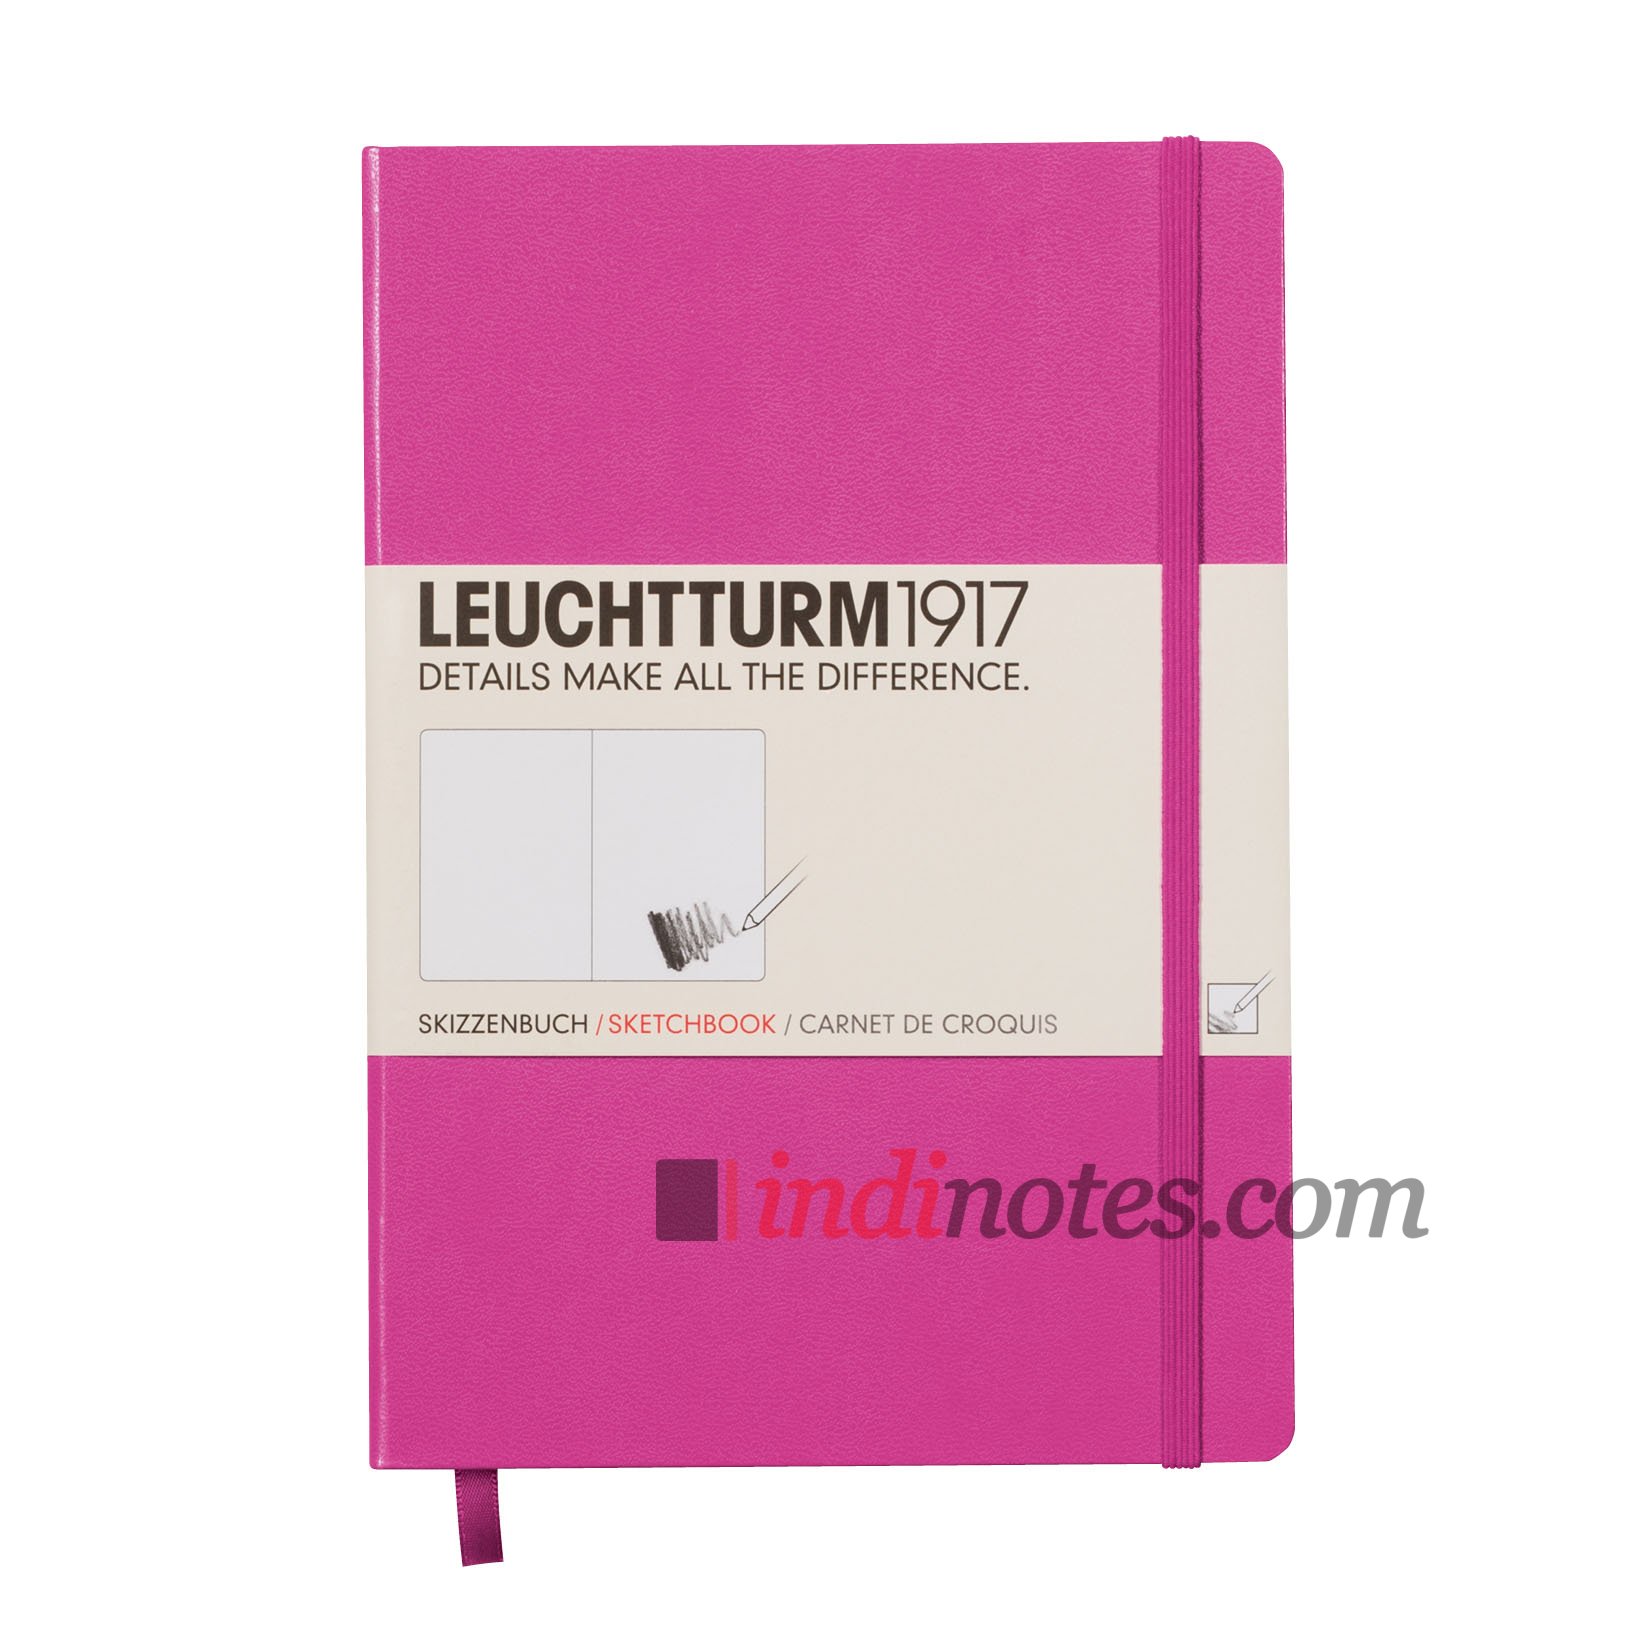 Купить Скетчбук, альбом для рисования Leuchtturm1917 Sketchbook Pink  (розовая обложка, формат А5) в магазине indinotes